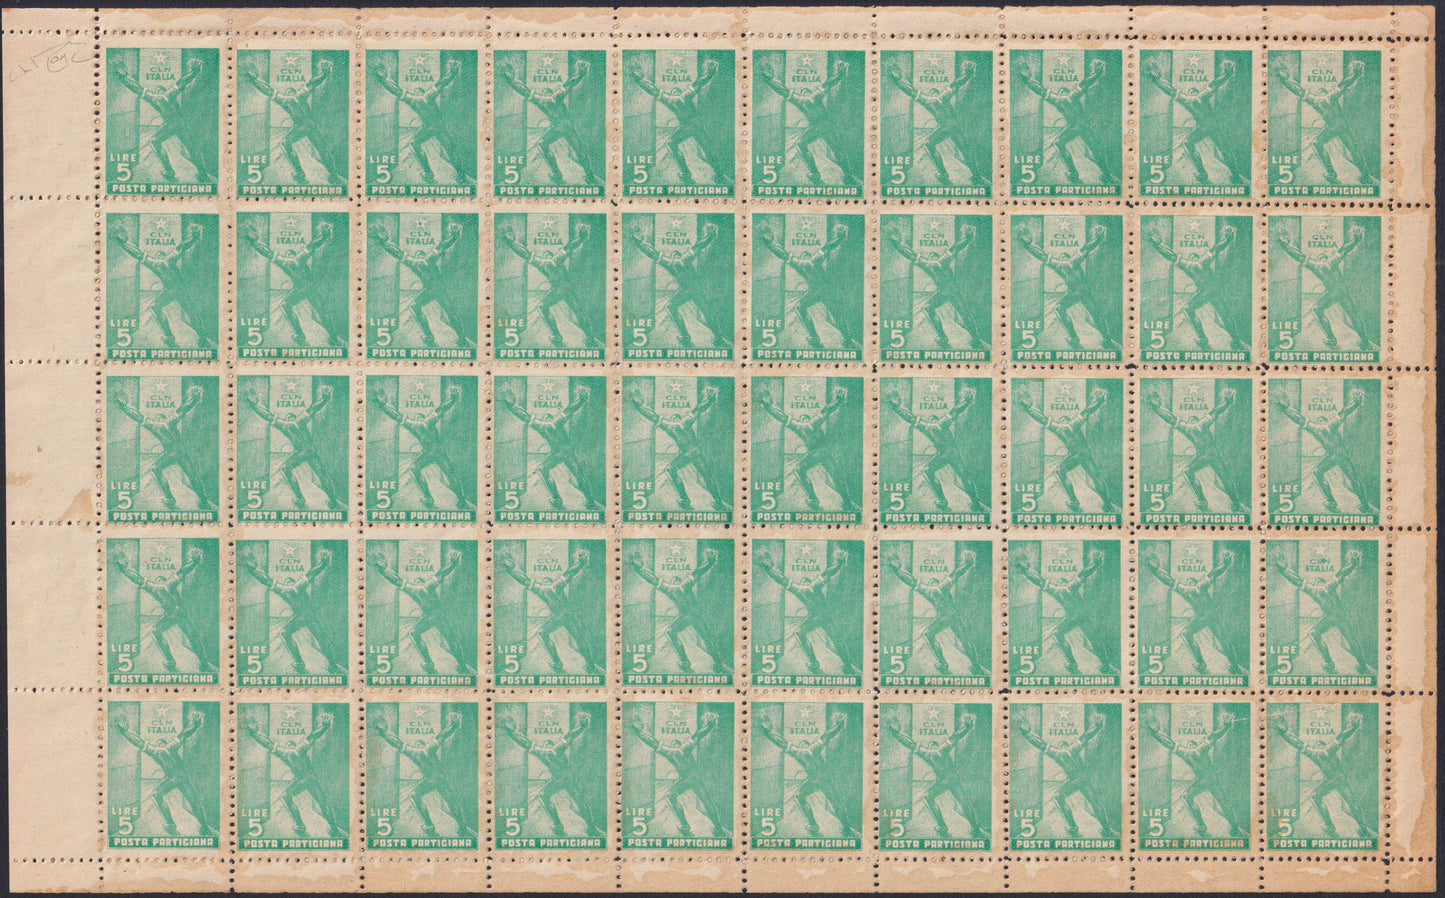 CLN94 - CLN PARMA, Posta Partigiana, il set dei due fogli completi da 50 esemplari comprendenti tutte le varietà litografiche catalogate dall'Errani Raybaudi, Rarità! (1, 2).